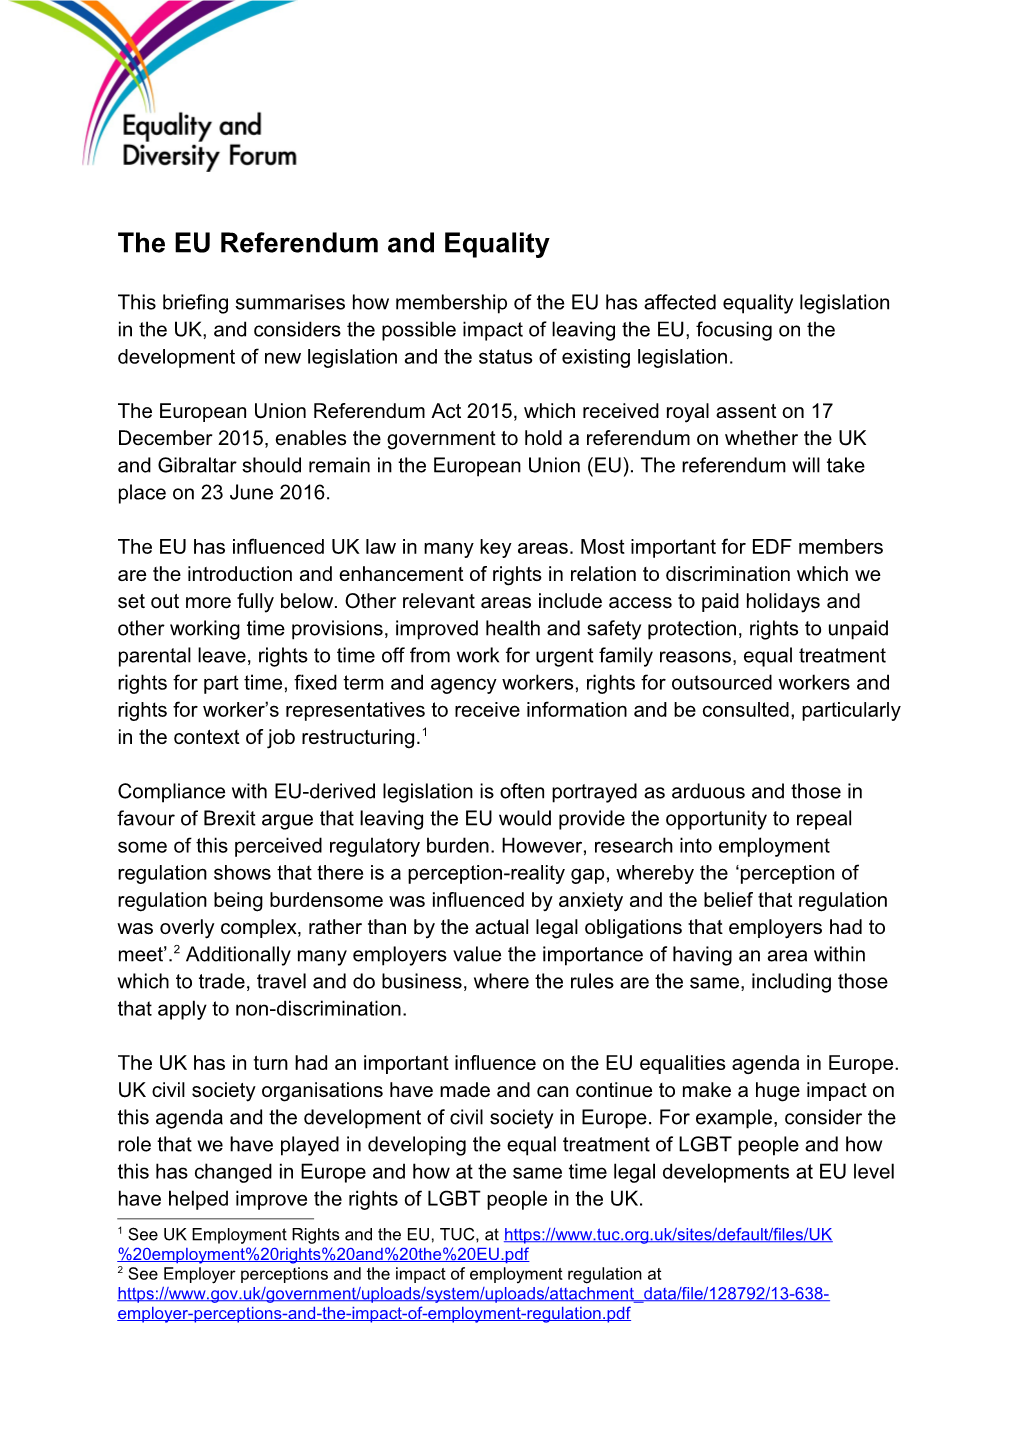 The EU Referendum and Equality